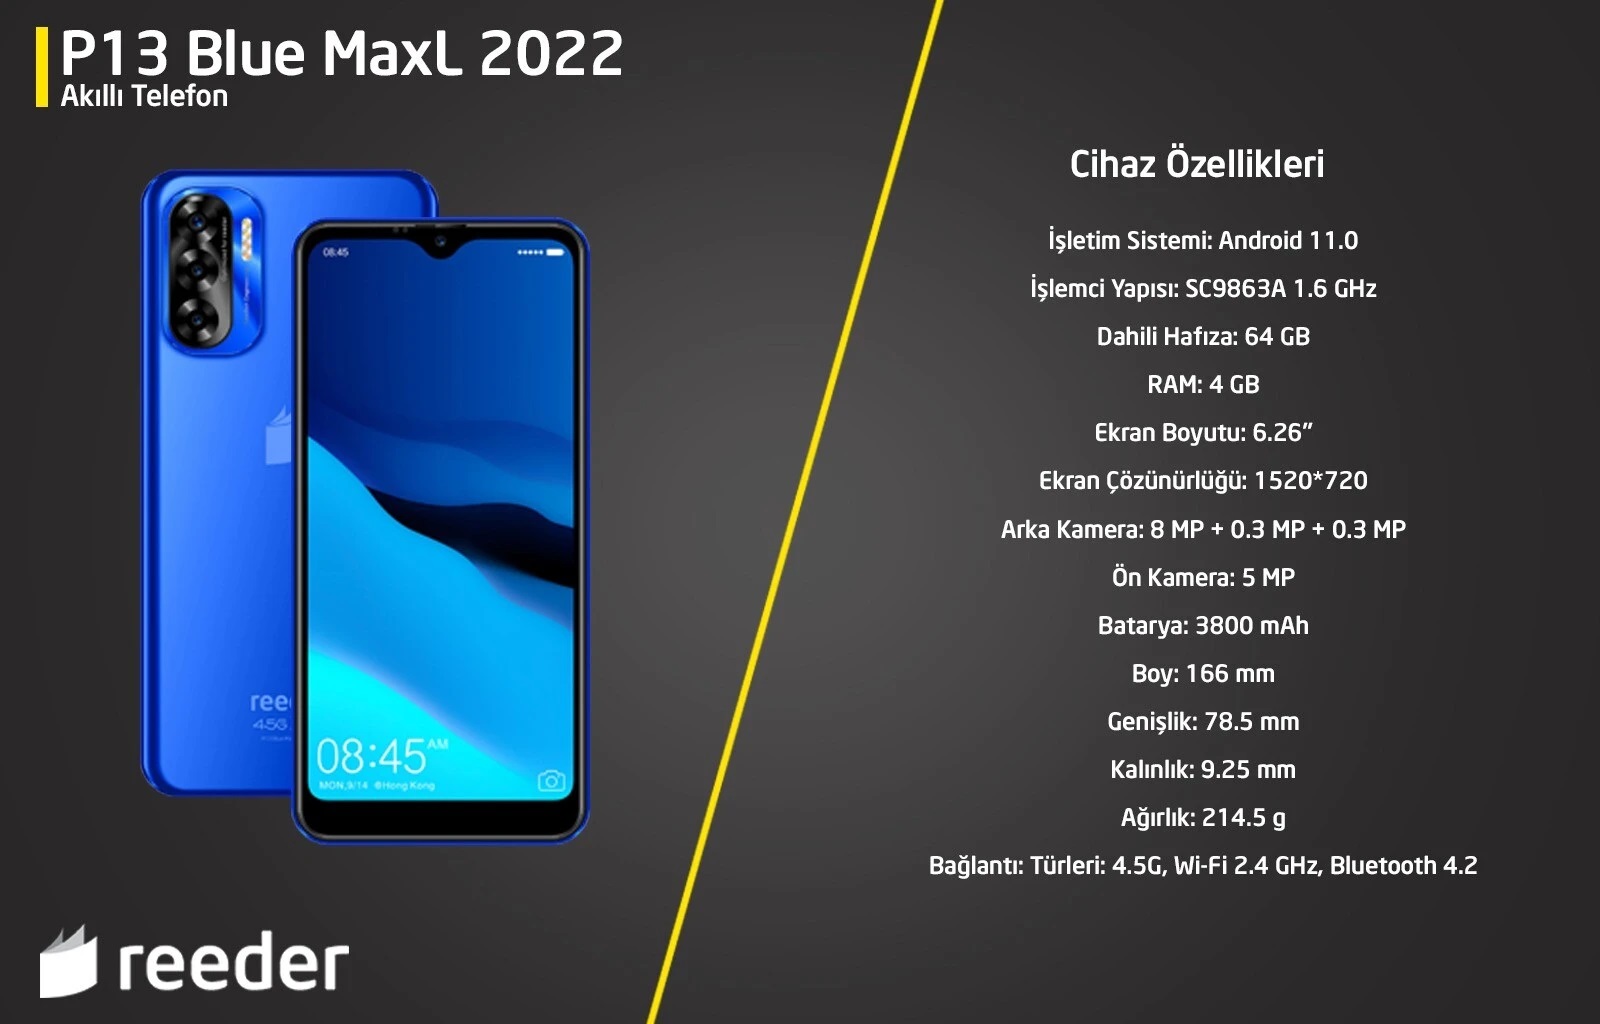 Reeder P13 MaxL 2022 64 GB 4 GB Akıllı Cep Telefo Mpnu Reeder Yeni P13 Max L 2022 ile sizlere Fiyat Performasn  ürünü karşınızda. 64 Gb hafızası 4 GB Ram ile sizlere uygun fiyara yüksek performans sunuyor. Yerli üretim Reeder ürünleri uygun fiyatları ve kalitesiyle her zaman yanınızda.